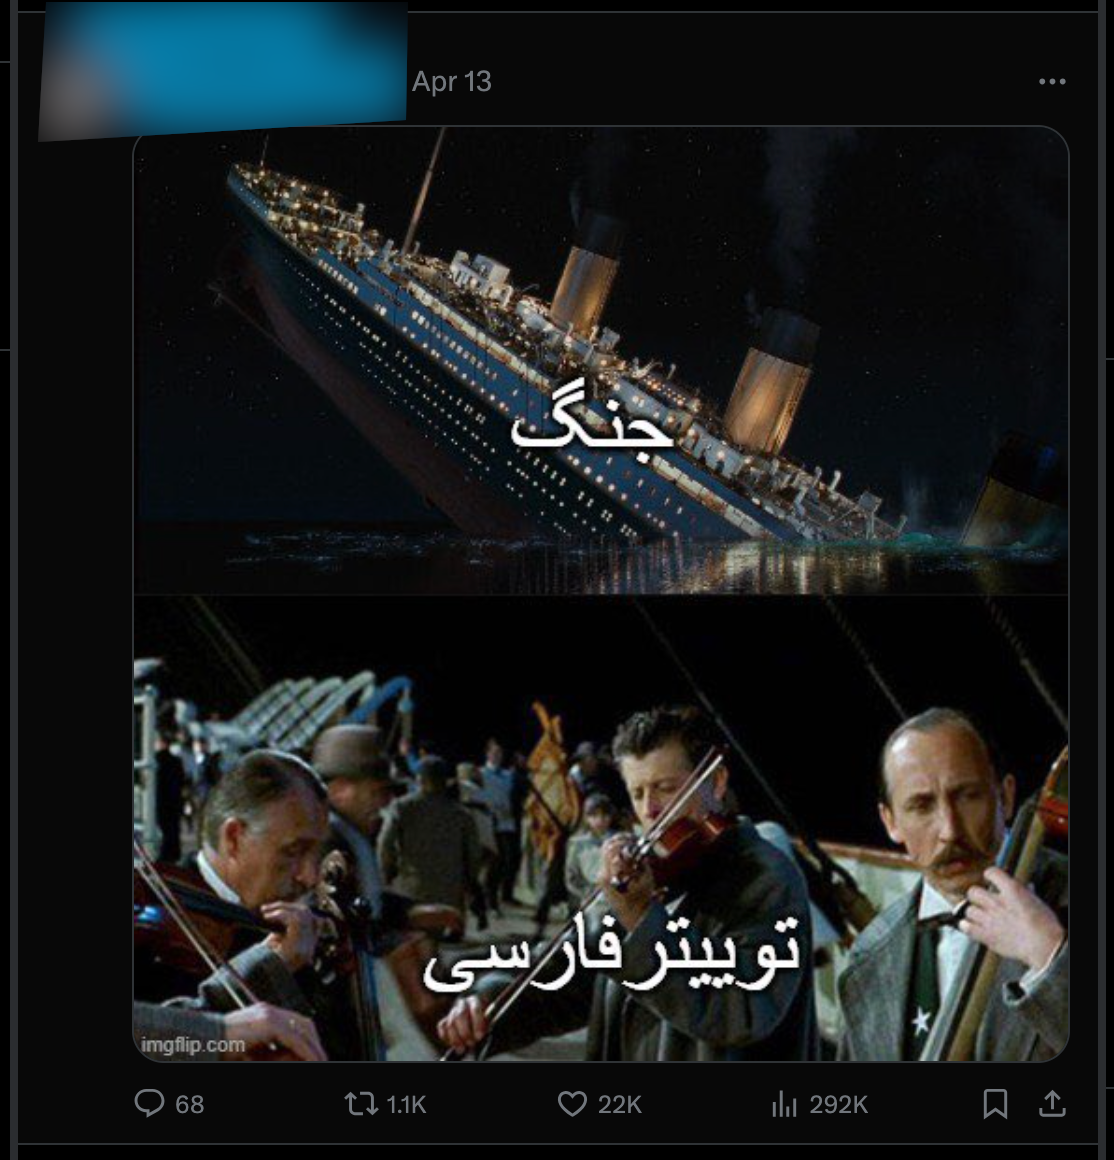 Andere Beiträge hatten einen düstereren Ton.  Dieses auf X gepostete Bild verwendet Bilder aus dem Film Titanic.  Die Bildunterschrift oben lautet: „Krieg“, die Bildunterschrift unten: „Twitter im Iran.“